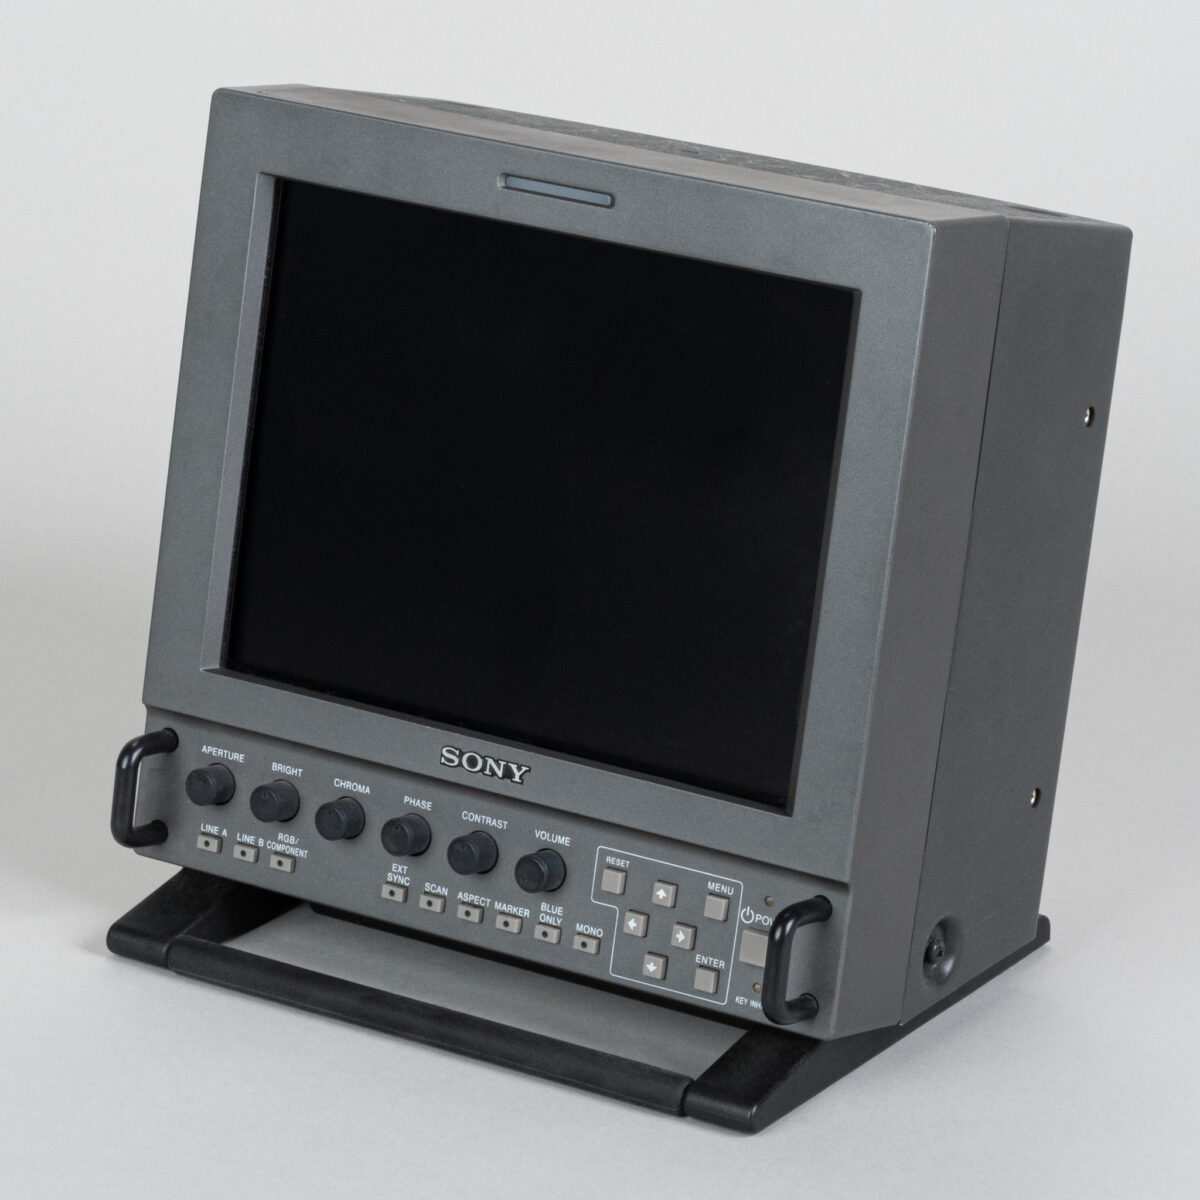 Sony LMD-9020